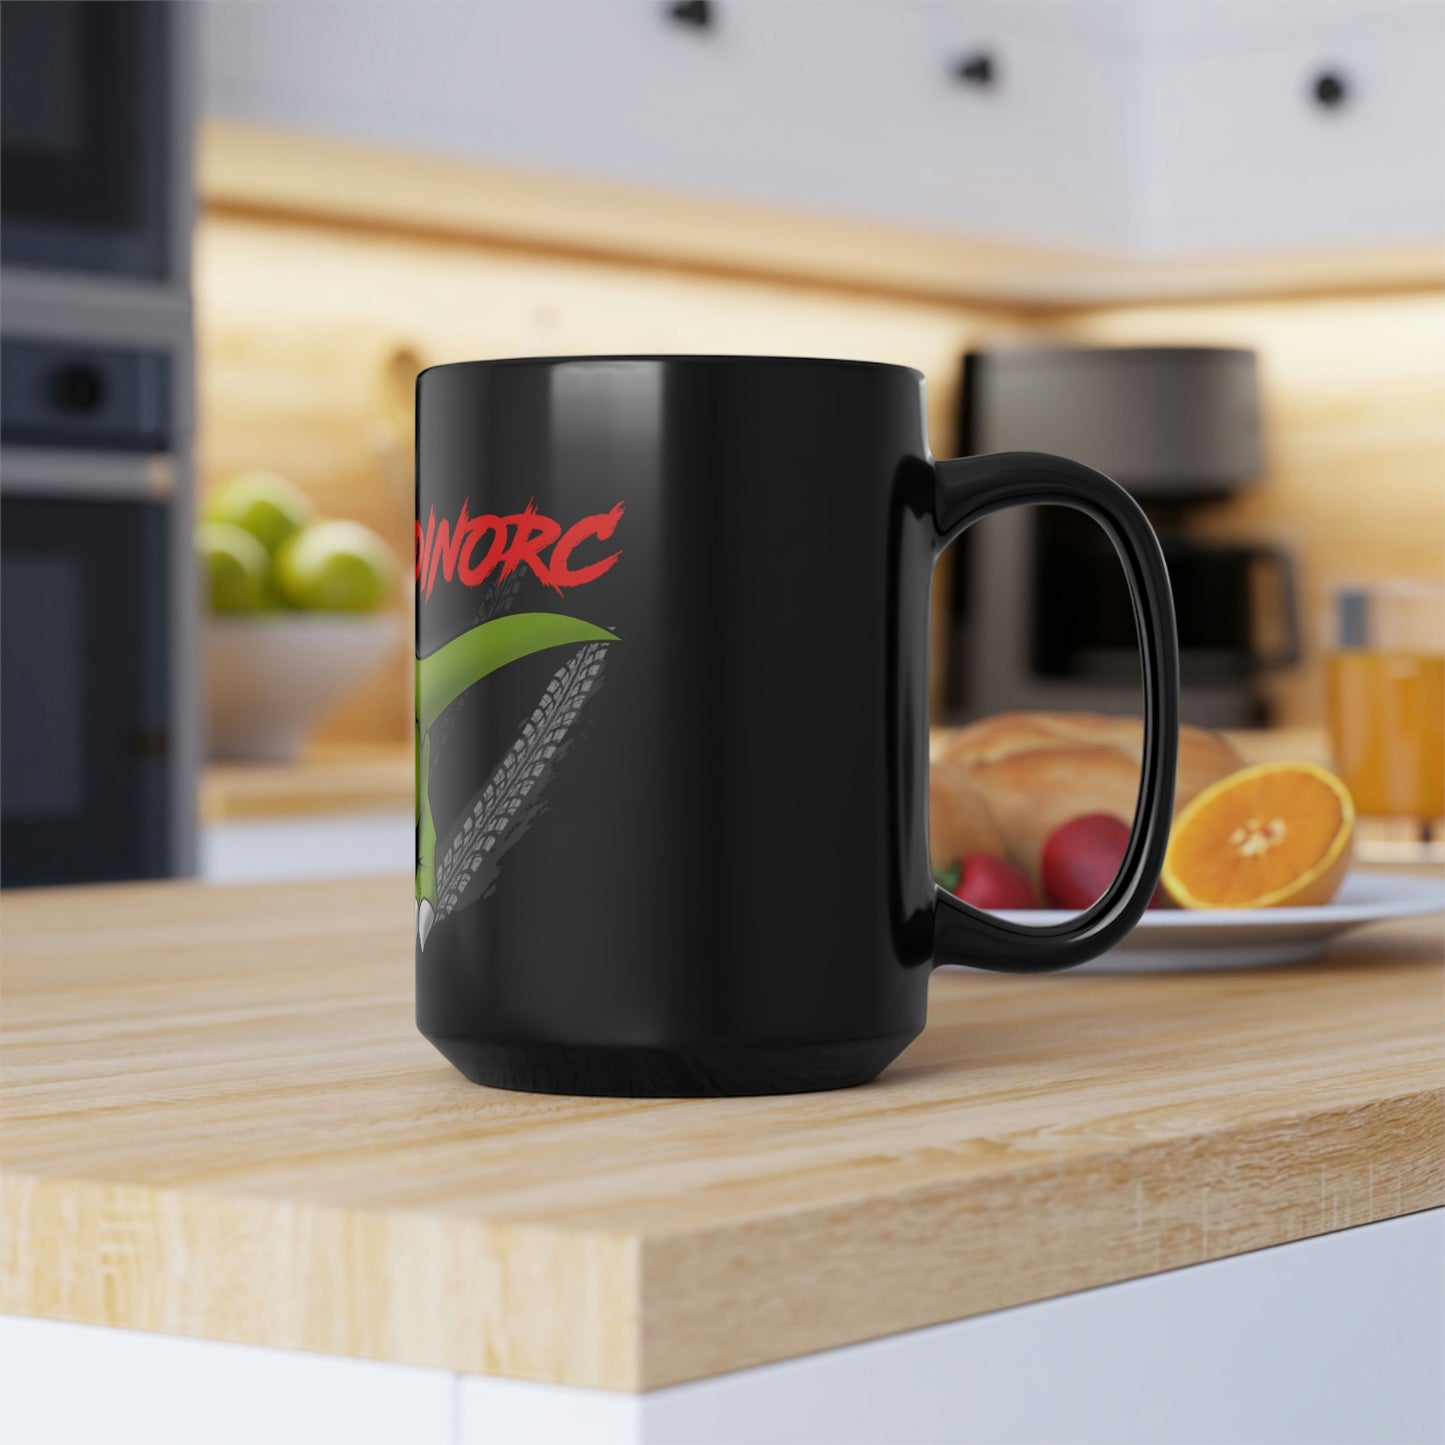 DinoRC Black Coffee Mug, 15oz